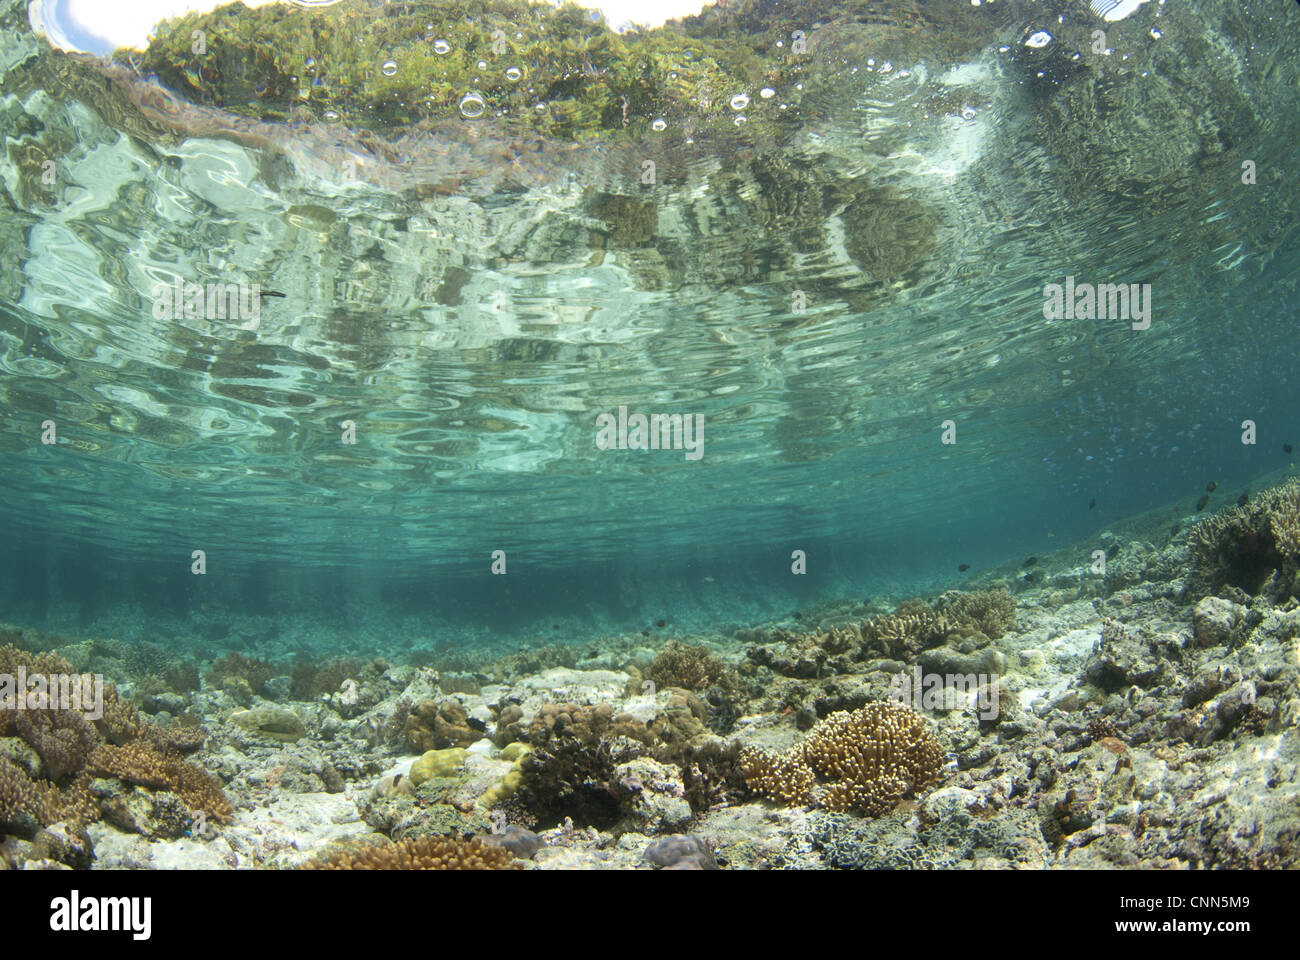 Blick auf Lebensraum Korallenriff in Untiefen, Kartoffel-Punkt, Fiabacet Insel, West-Papua-Neu-Guinea, Indonesien Stockfoto